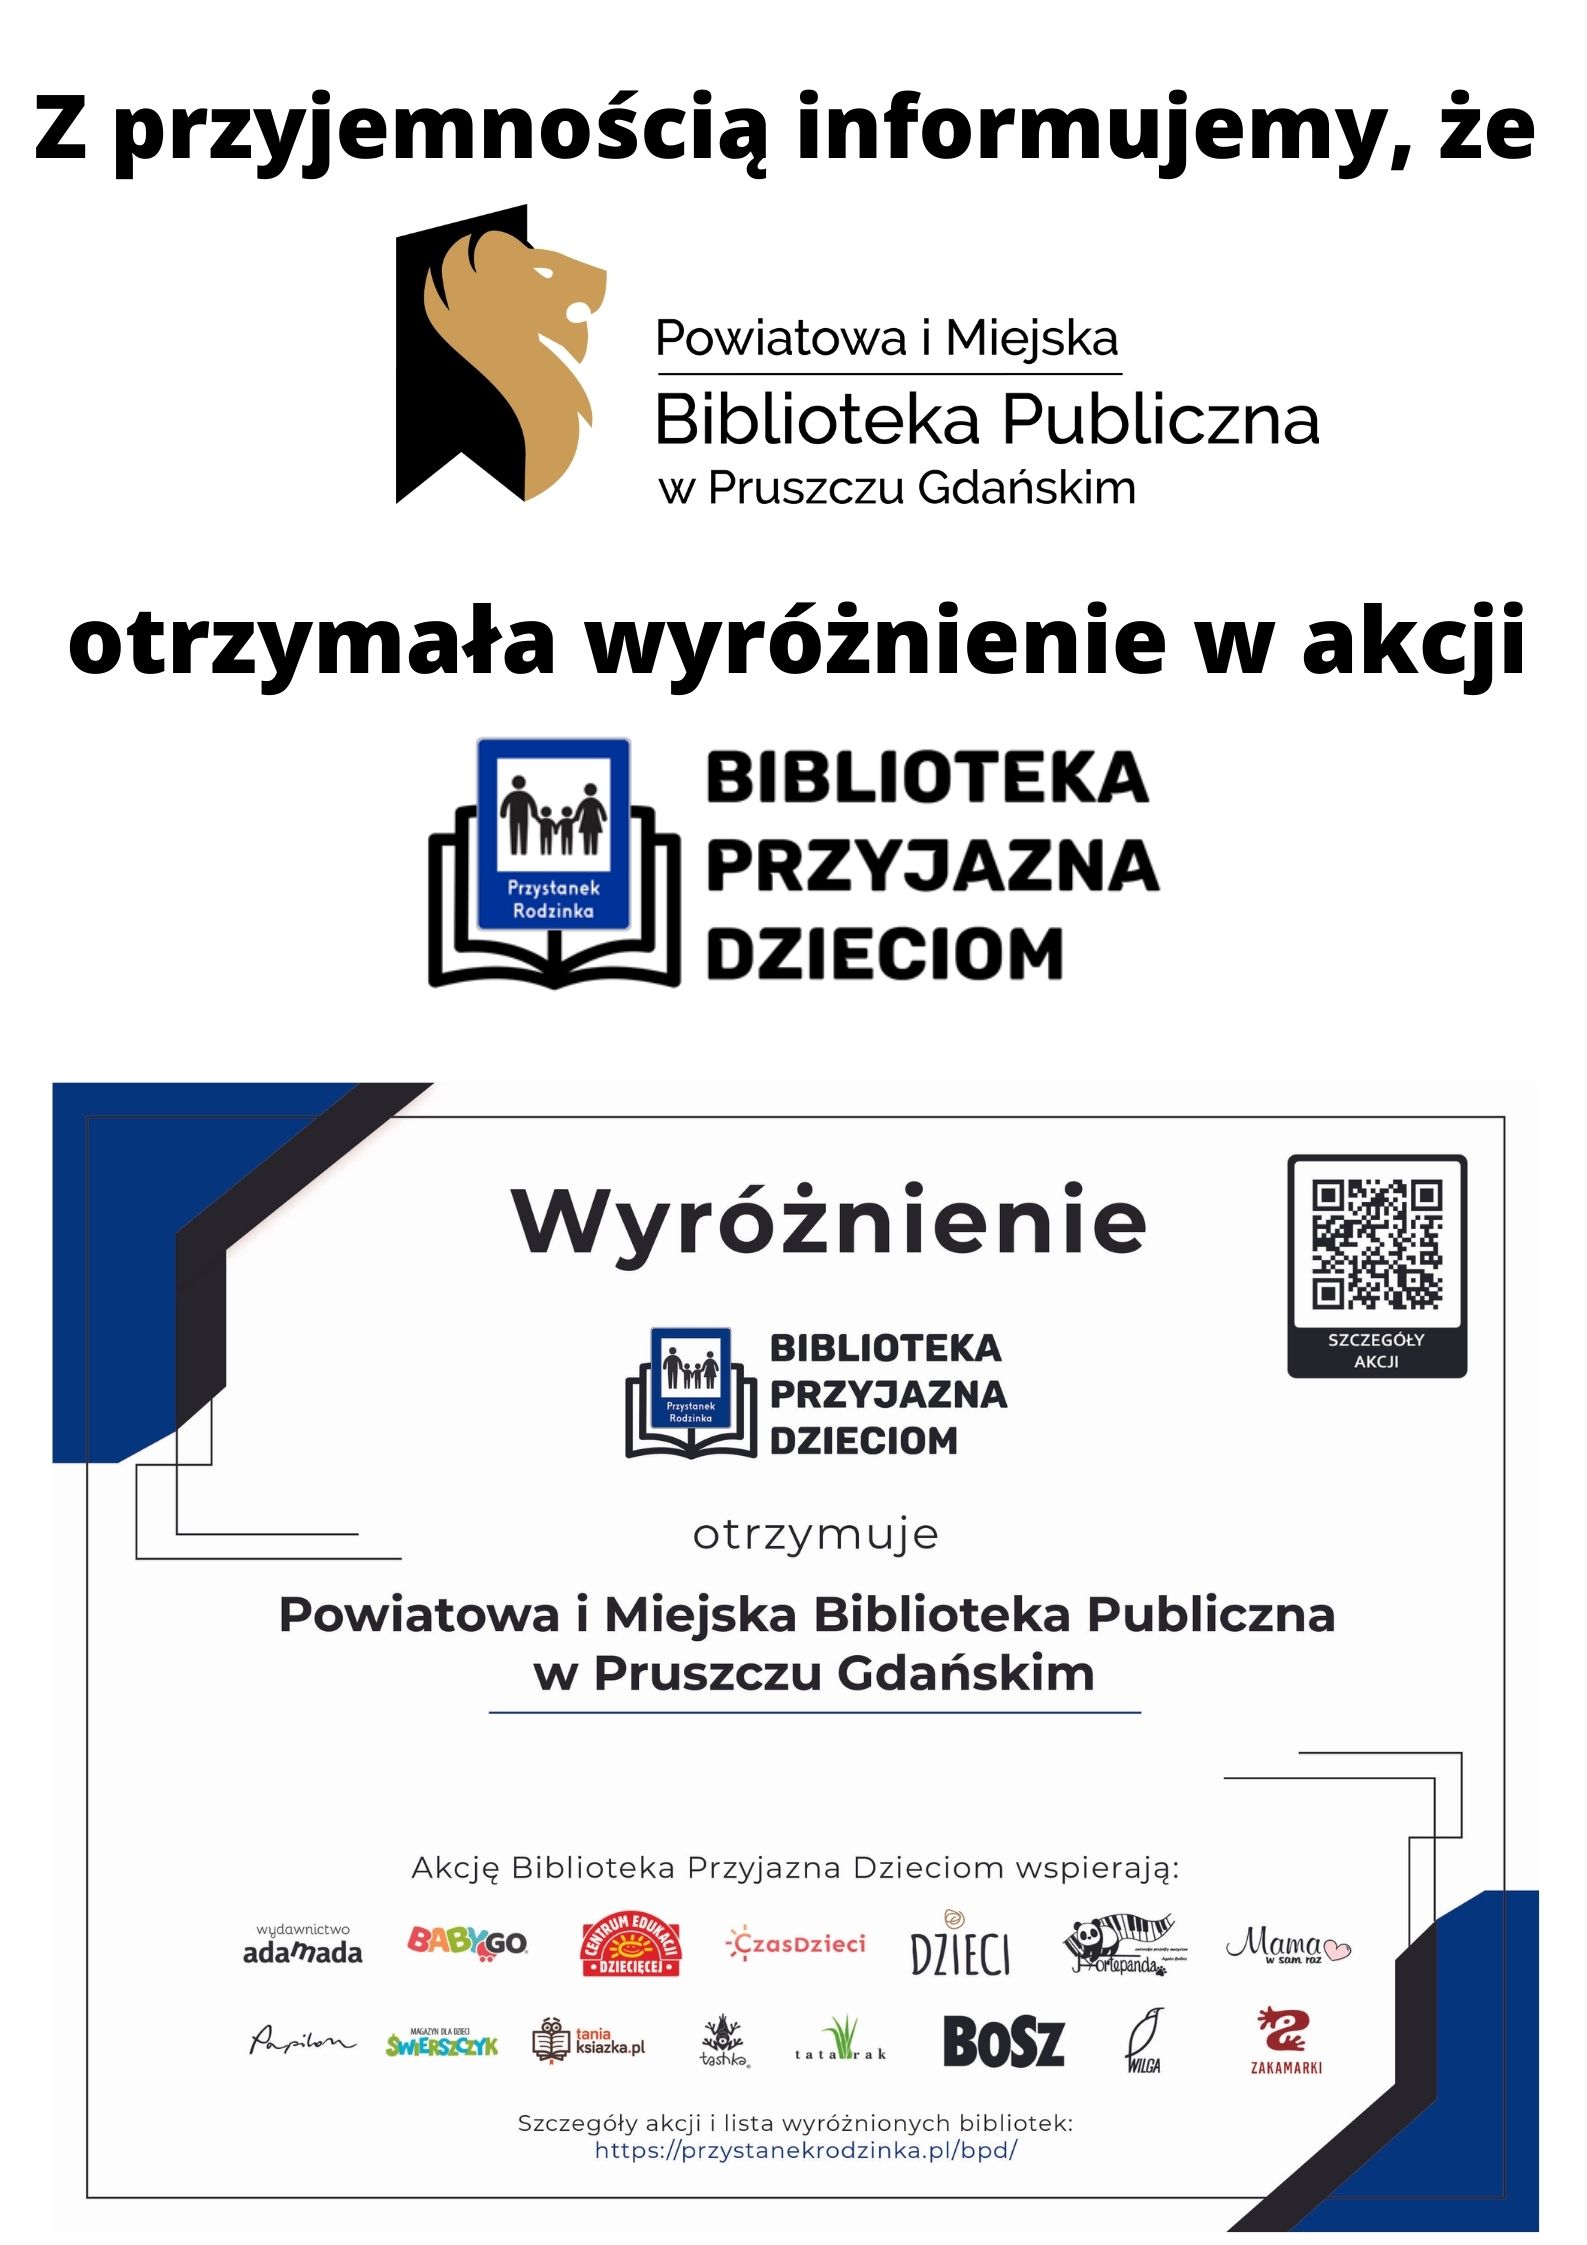 Tekst informujący, że Powiatowa i Miejska Biblioteka Publiczna w Pruszczu Gdańśkim otrzymała wyróżnienie w akcji Biblioteka Przyjazna Dzieciom.